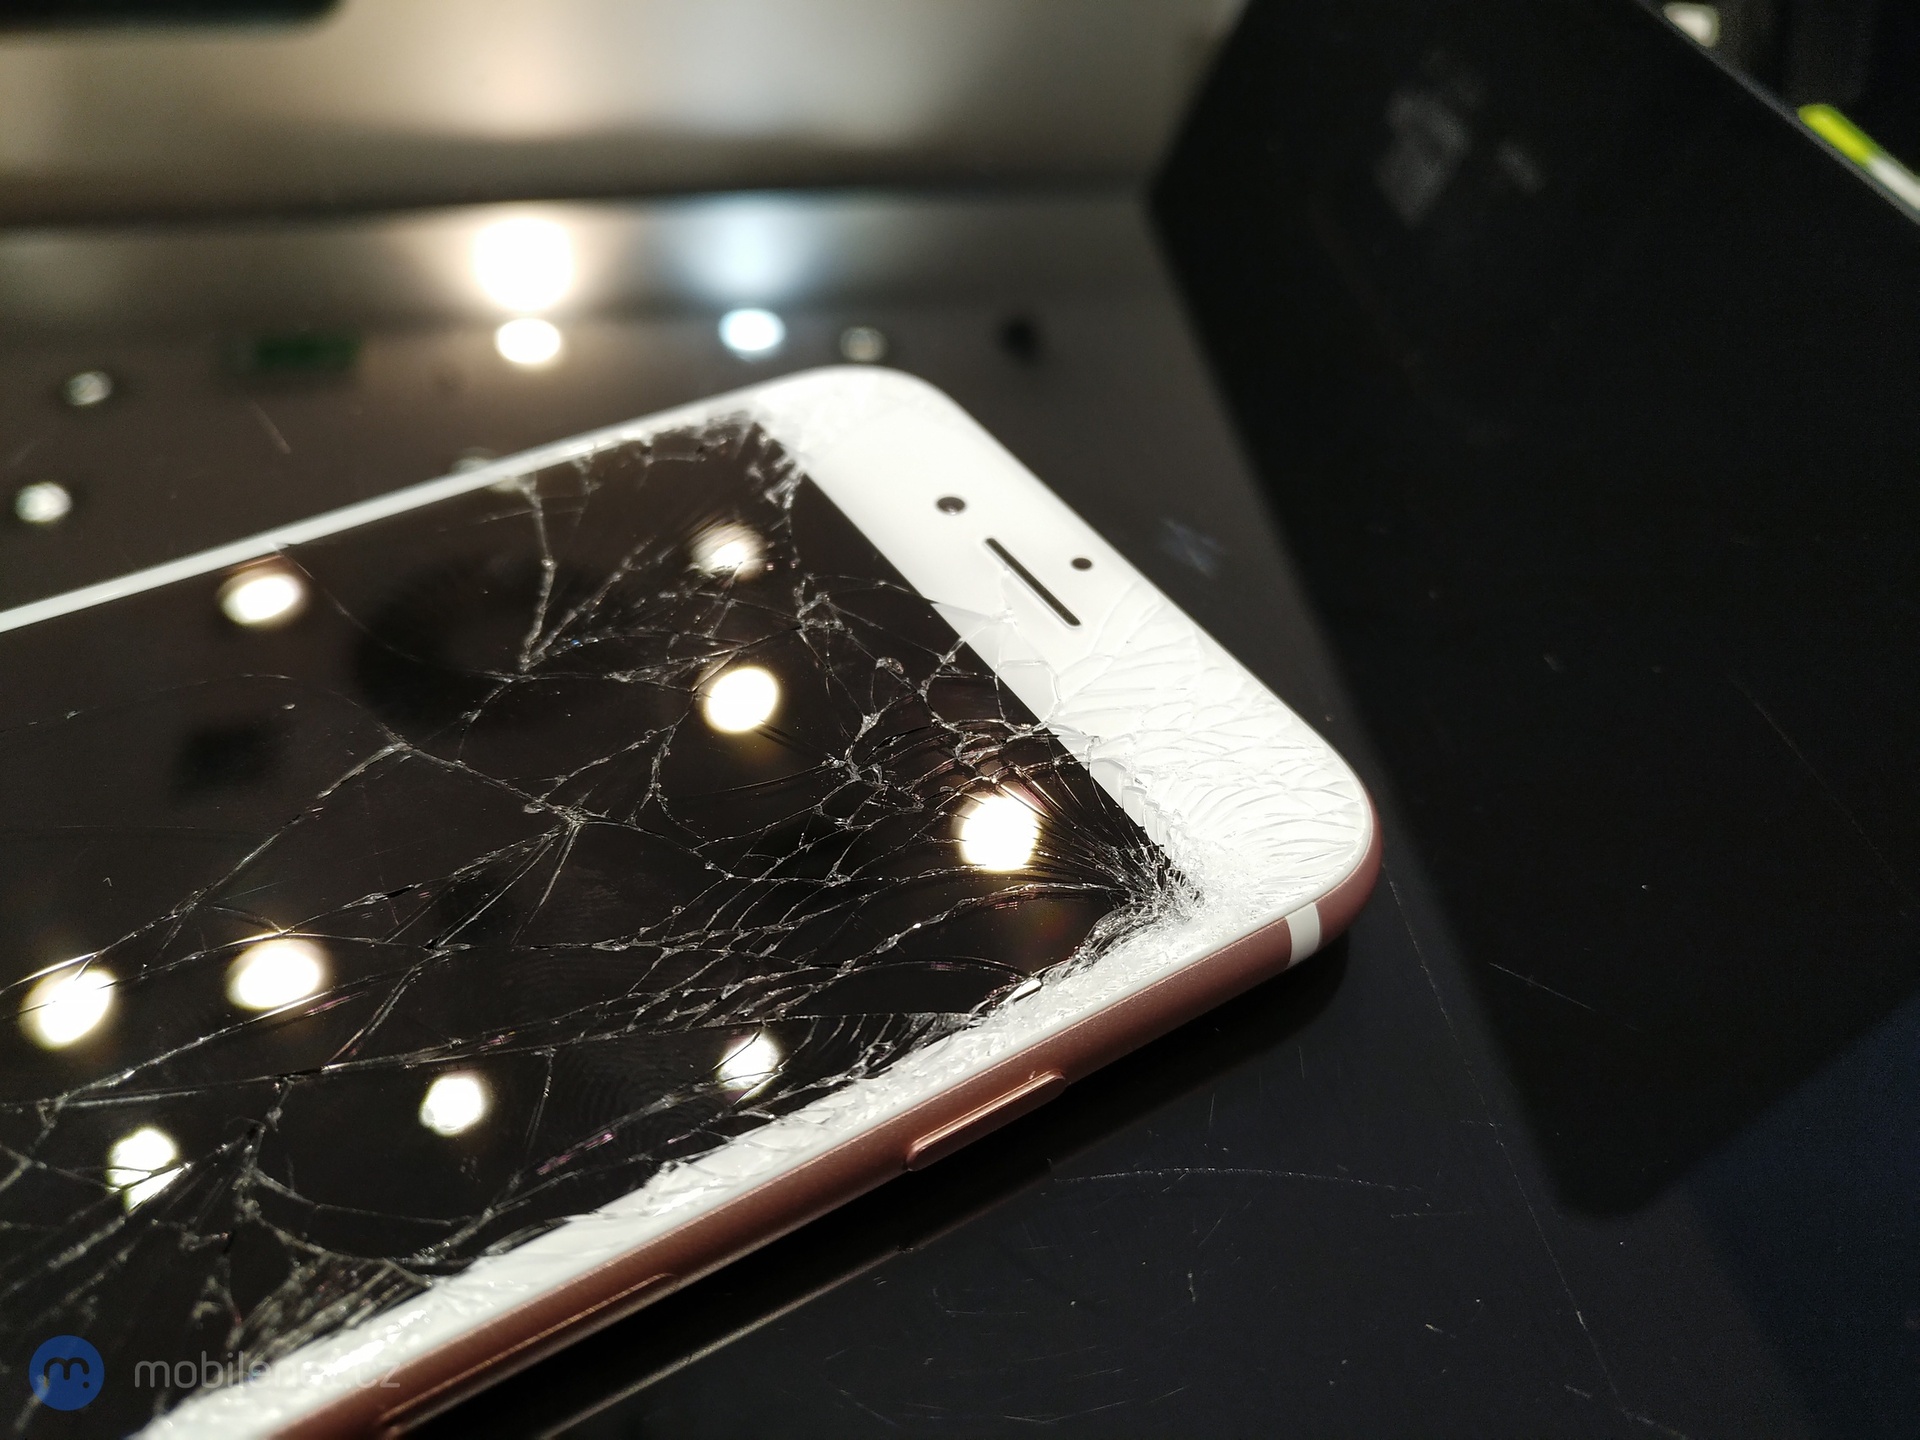 Rozbité sklo displeje na Apple iPhone 7